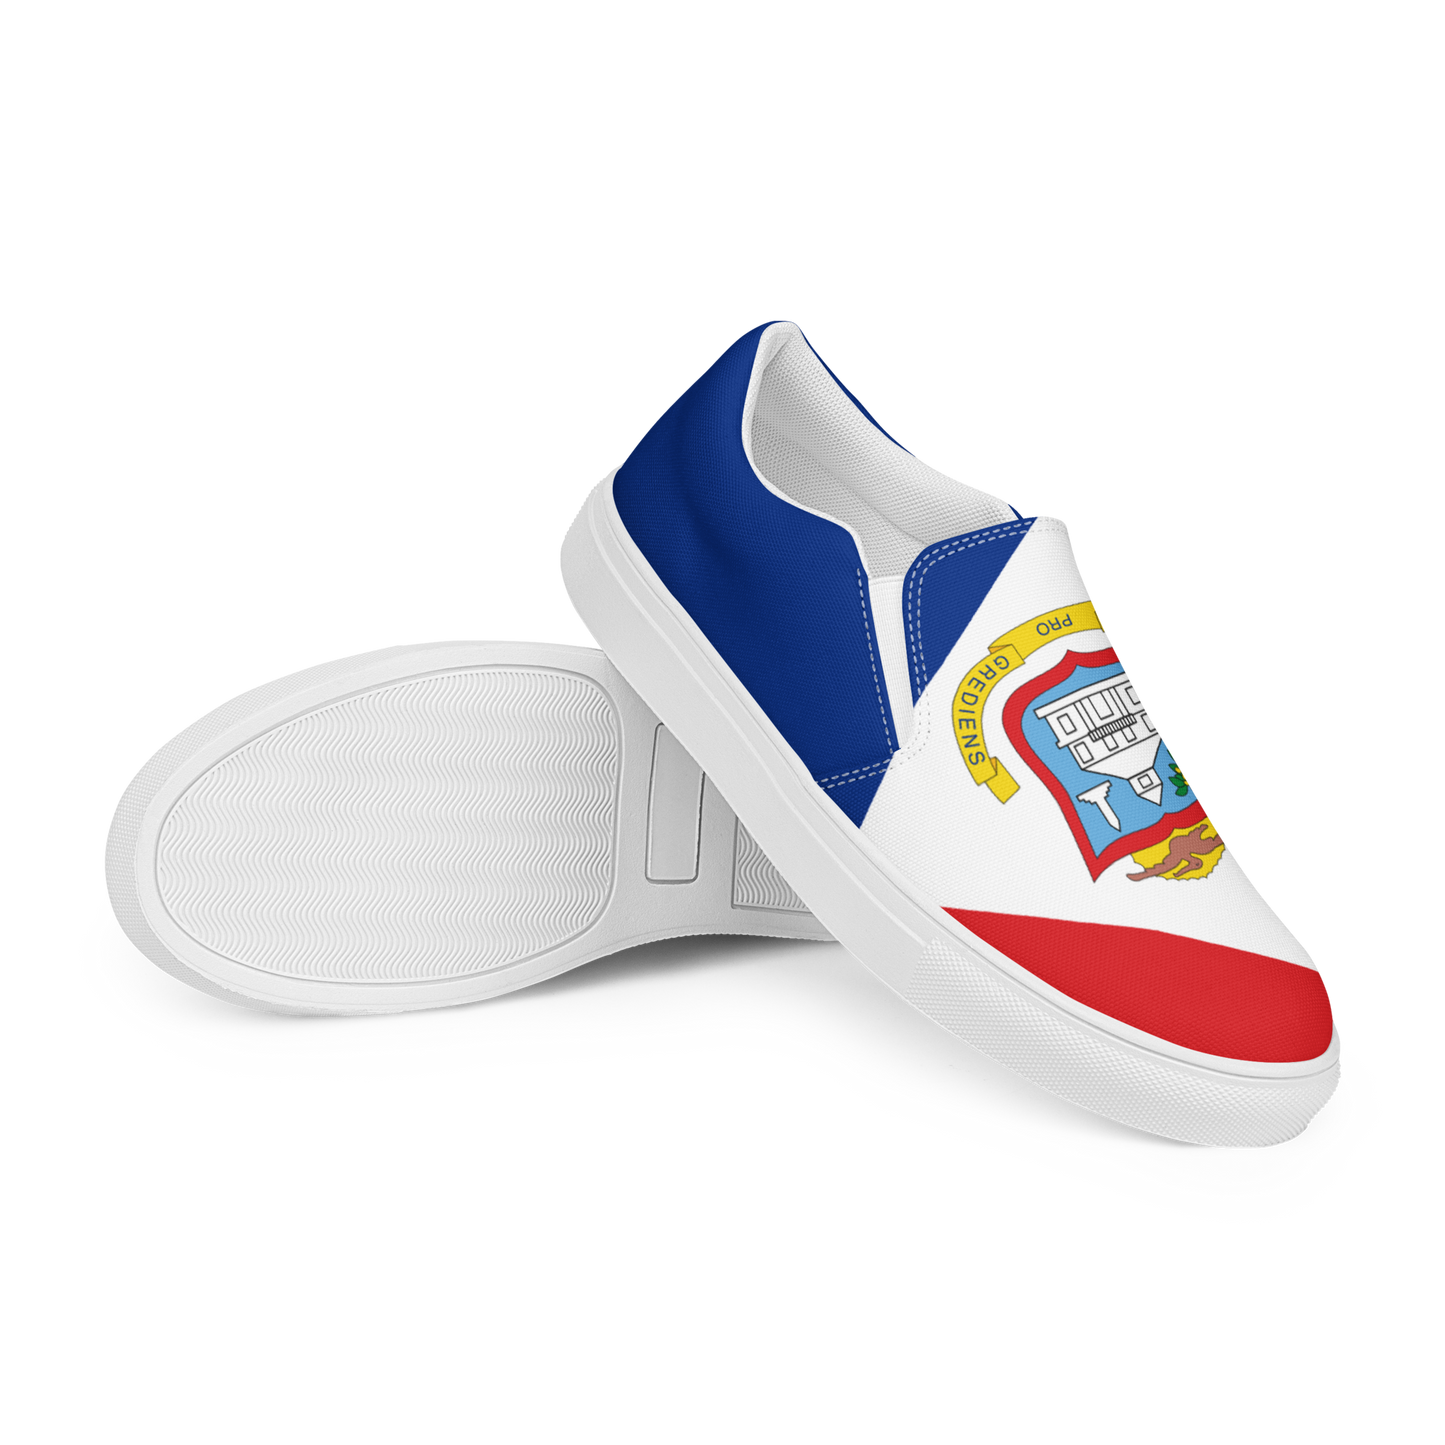 St. Maarten Men’s slip-on canvas shoes